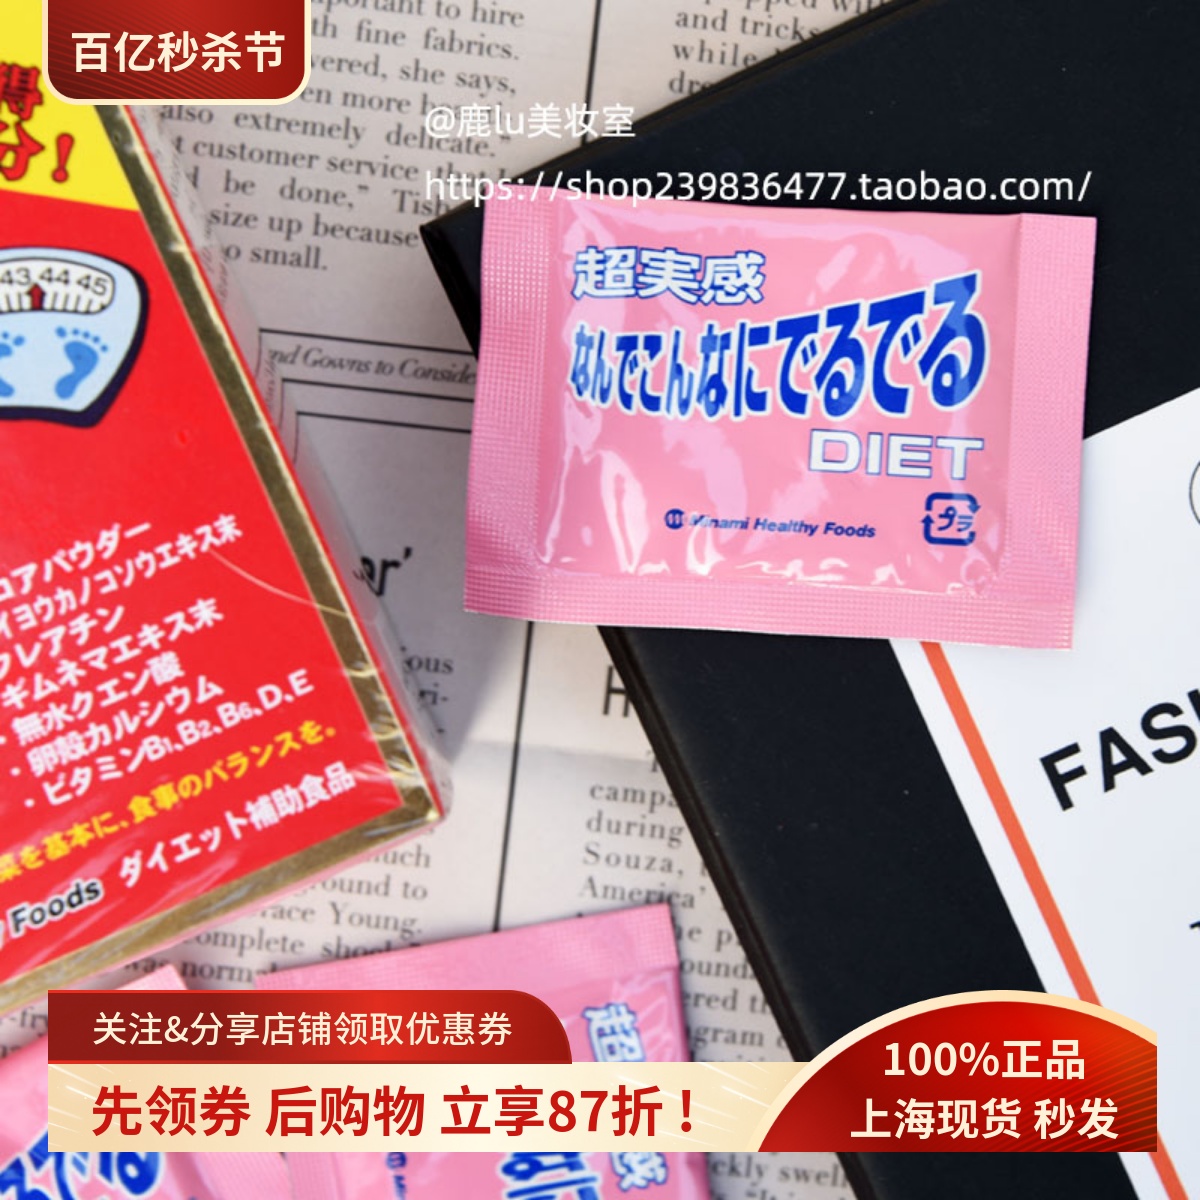 1包试吃小s推荐日本MINAMI氨基酸目标减重12KG升级版纤体丸塑身